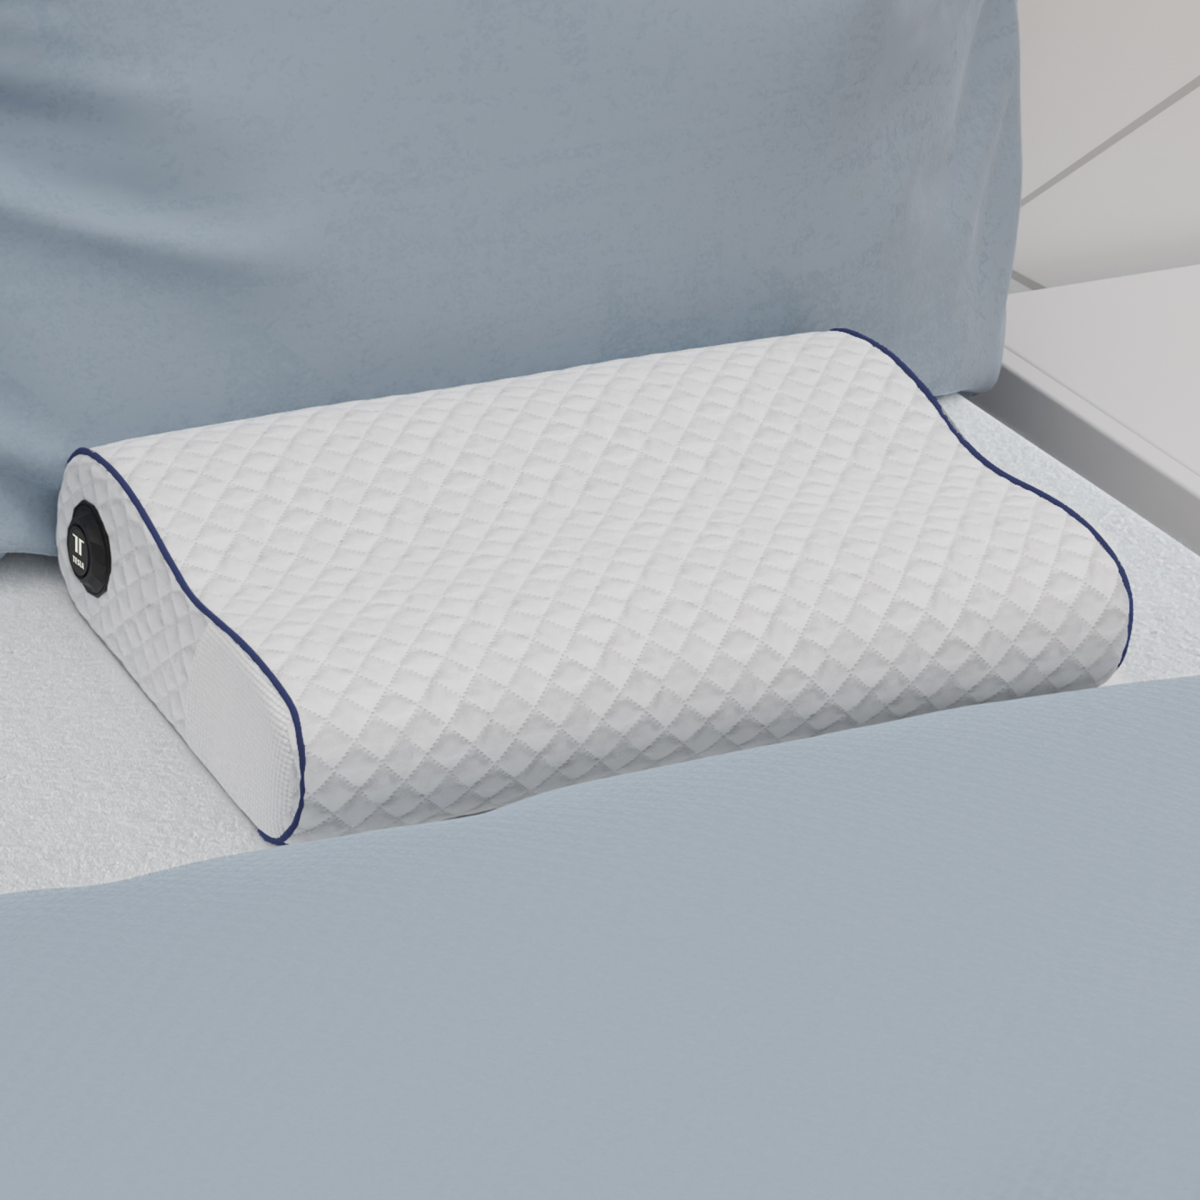 Tesla Smart Heating Pillow_1920x1920-05.png